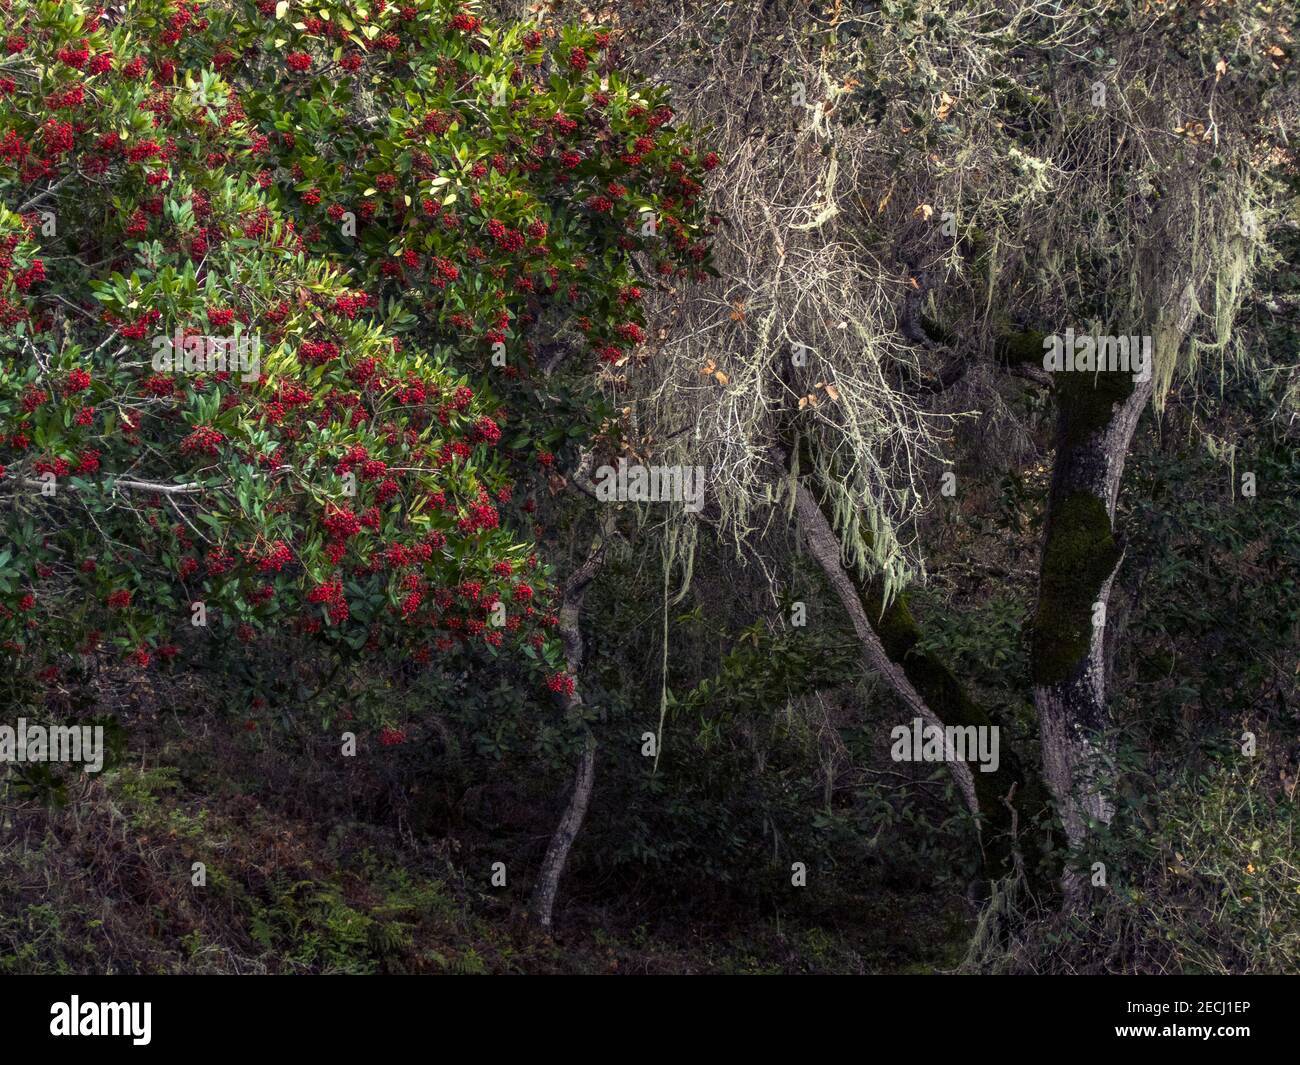 Les baies de écarlate ornent un arbre de la baie de Californie (Umbellularia californica) tandis que les lichens couvrent un arbre de la baie adjacent (mort) au parc régional de Garland Ranch. Banque D'Images